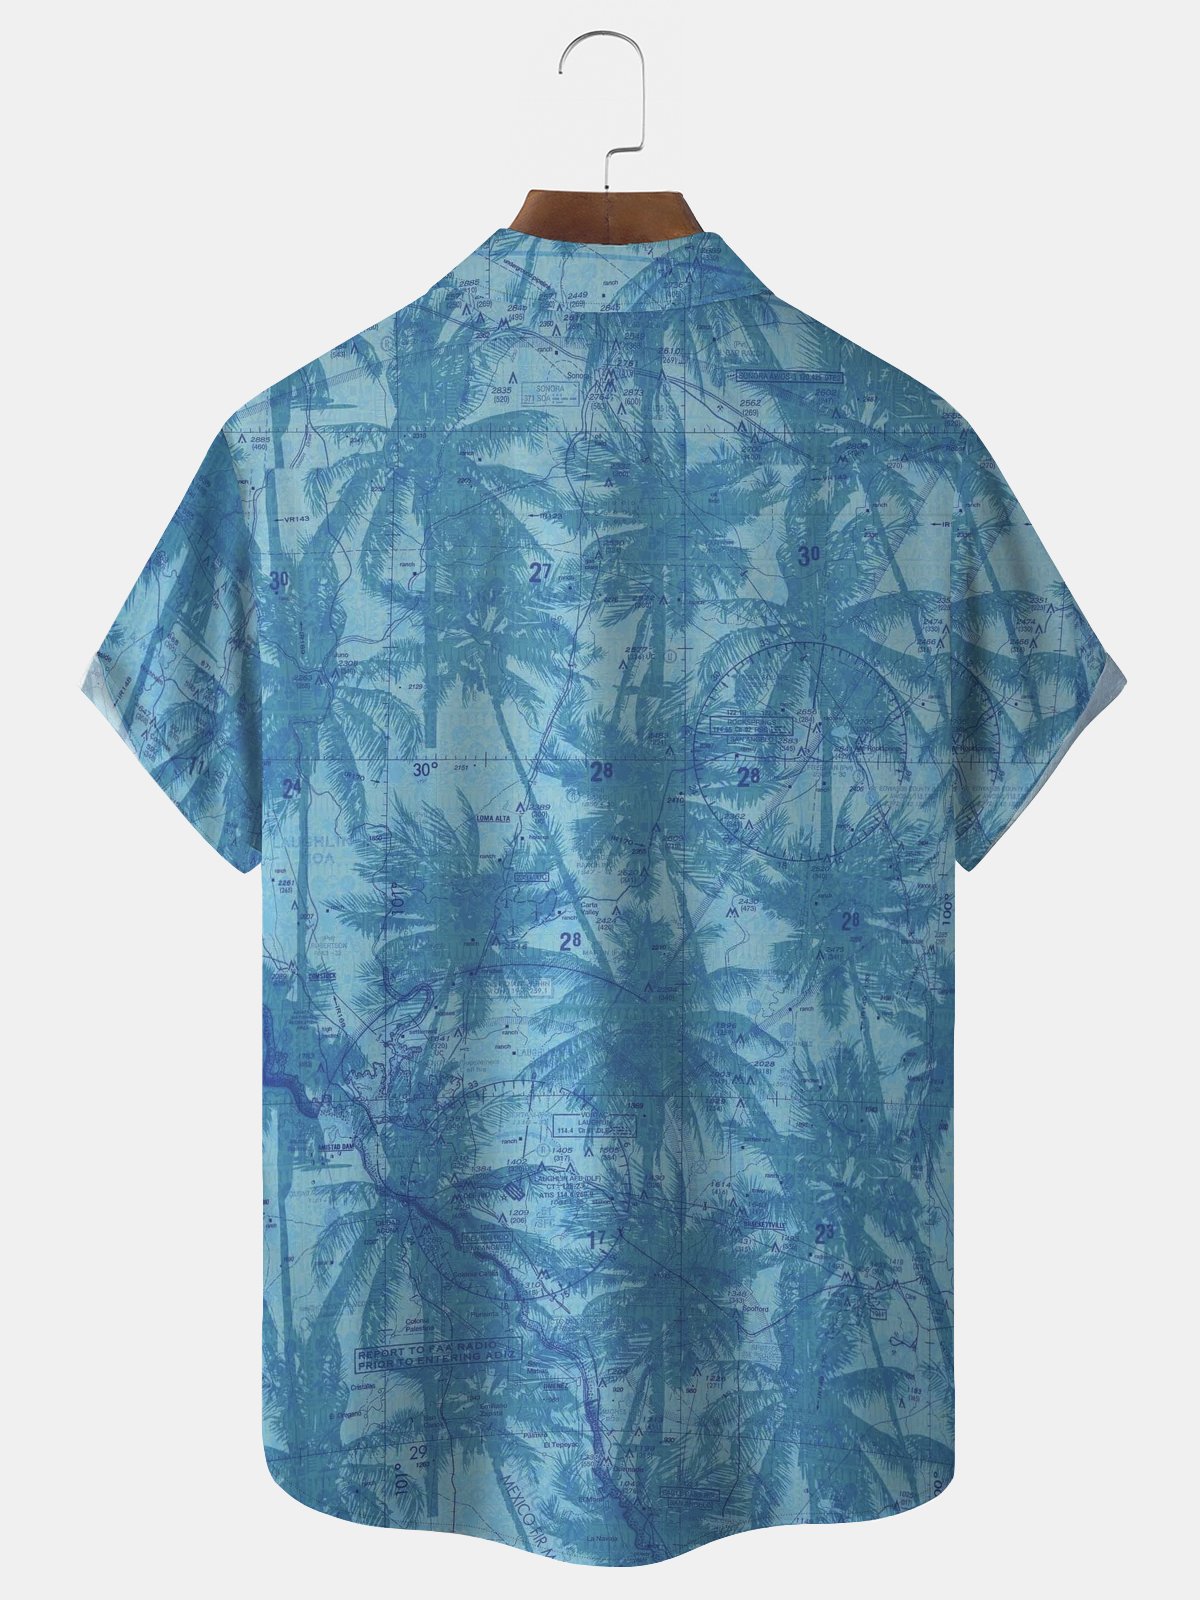 Royaura Blue Palms Cocount Hawaiian Shirt Oversized Vacation Aloha Shirt